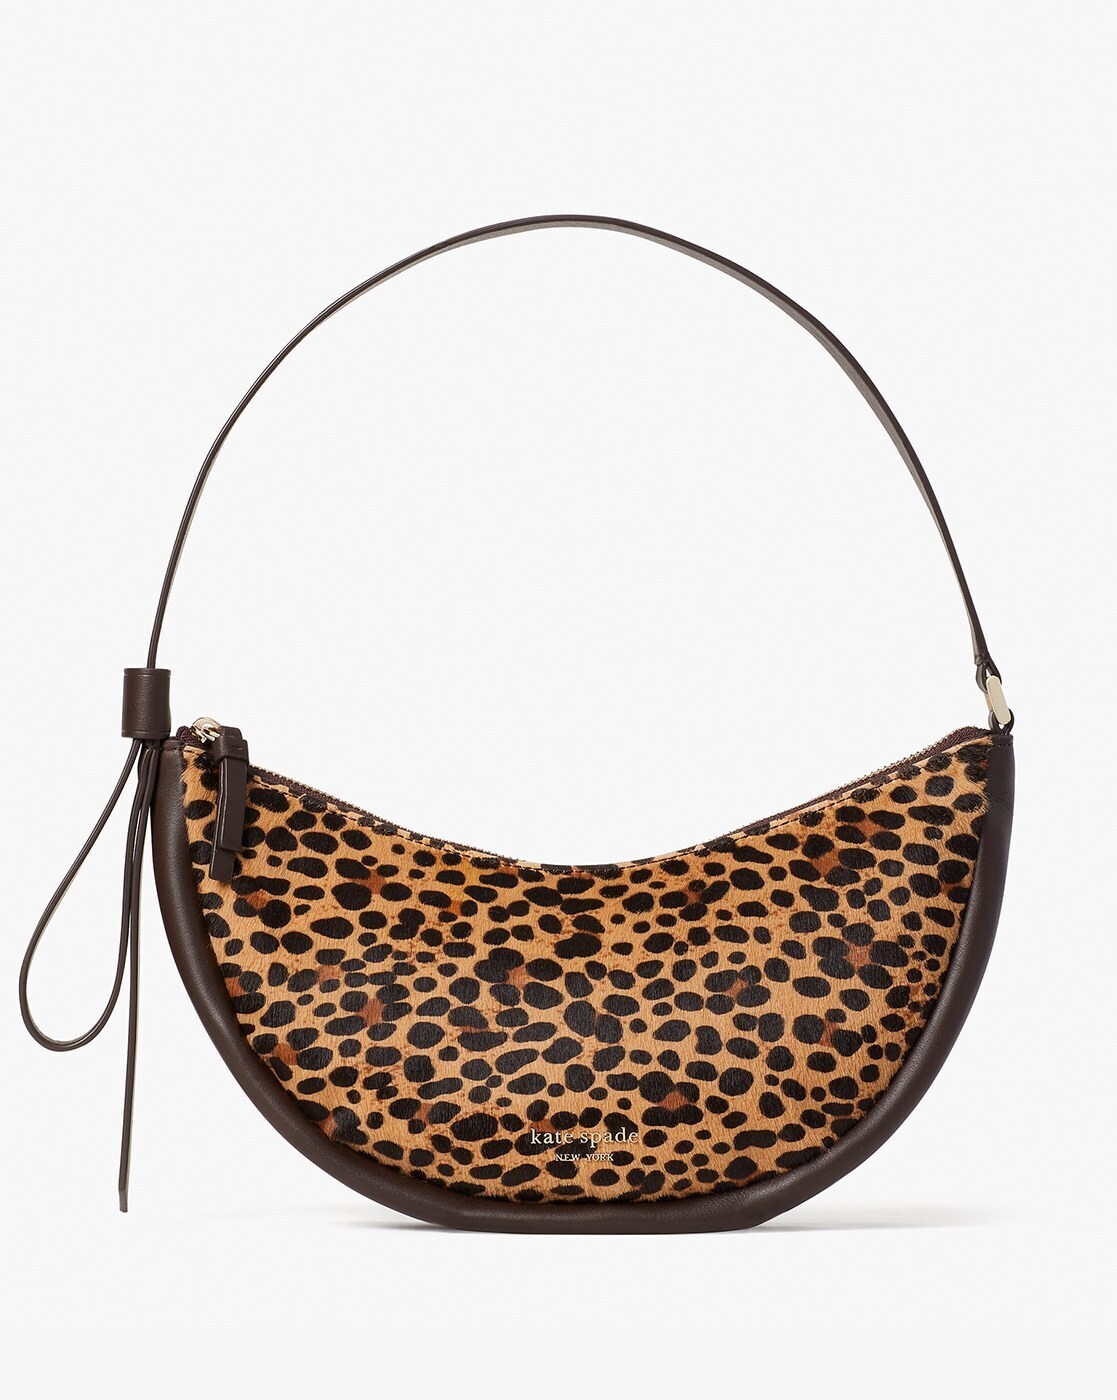 Kate Spade Tiger Tote Bags for Women | Mercari